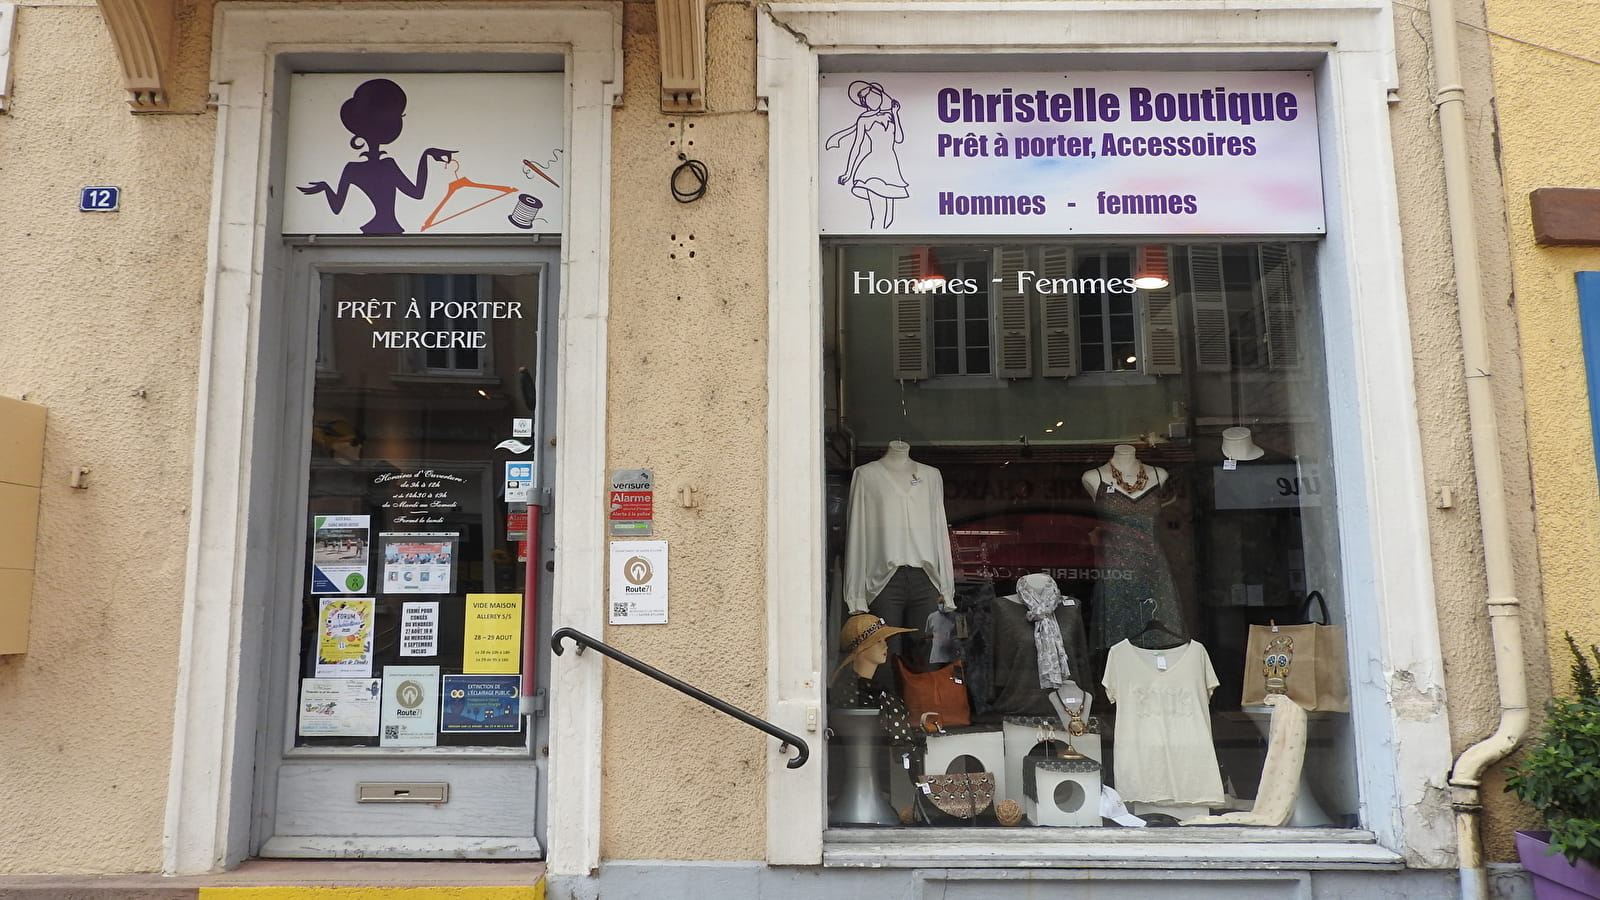 Christelle Boutique